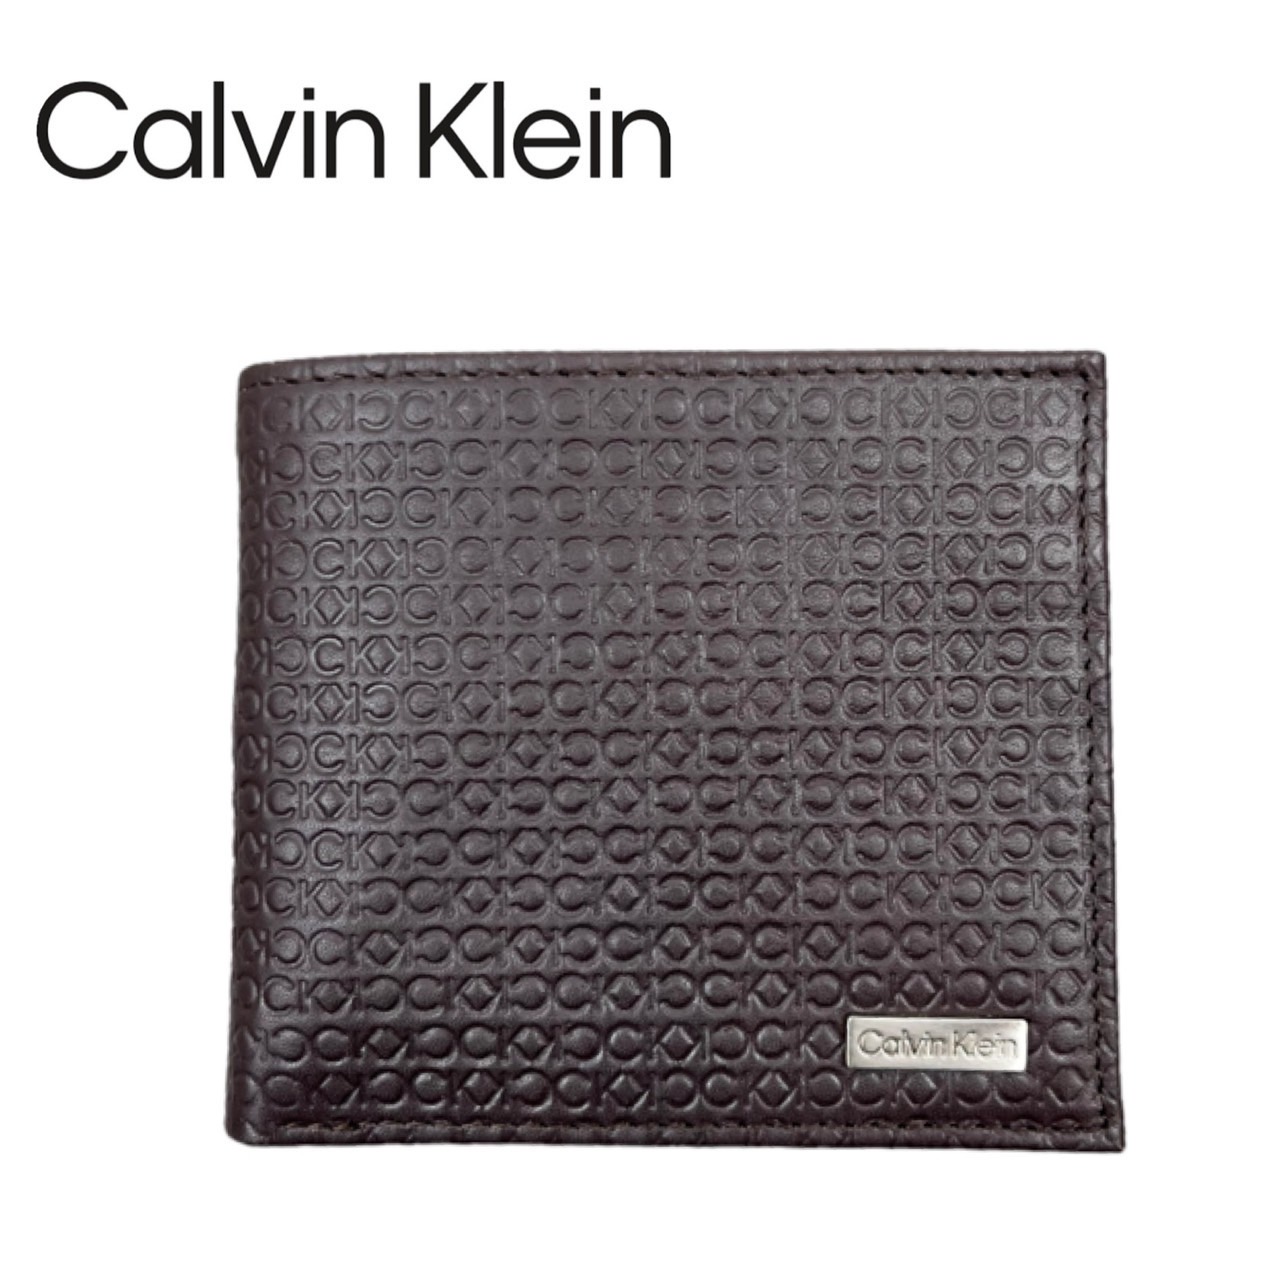 カルバンクラインCalvin Klein 財布 二つ折り財布 小銭入れ コンパクト 31CK1300...